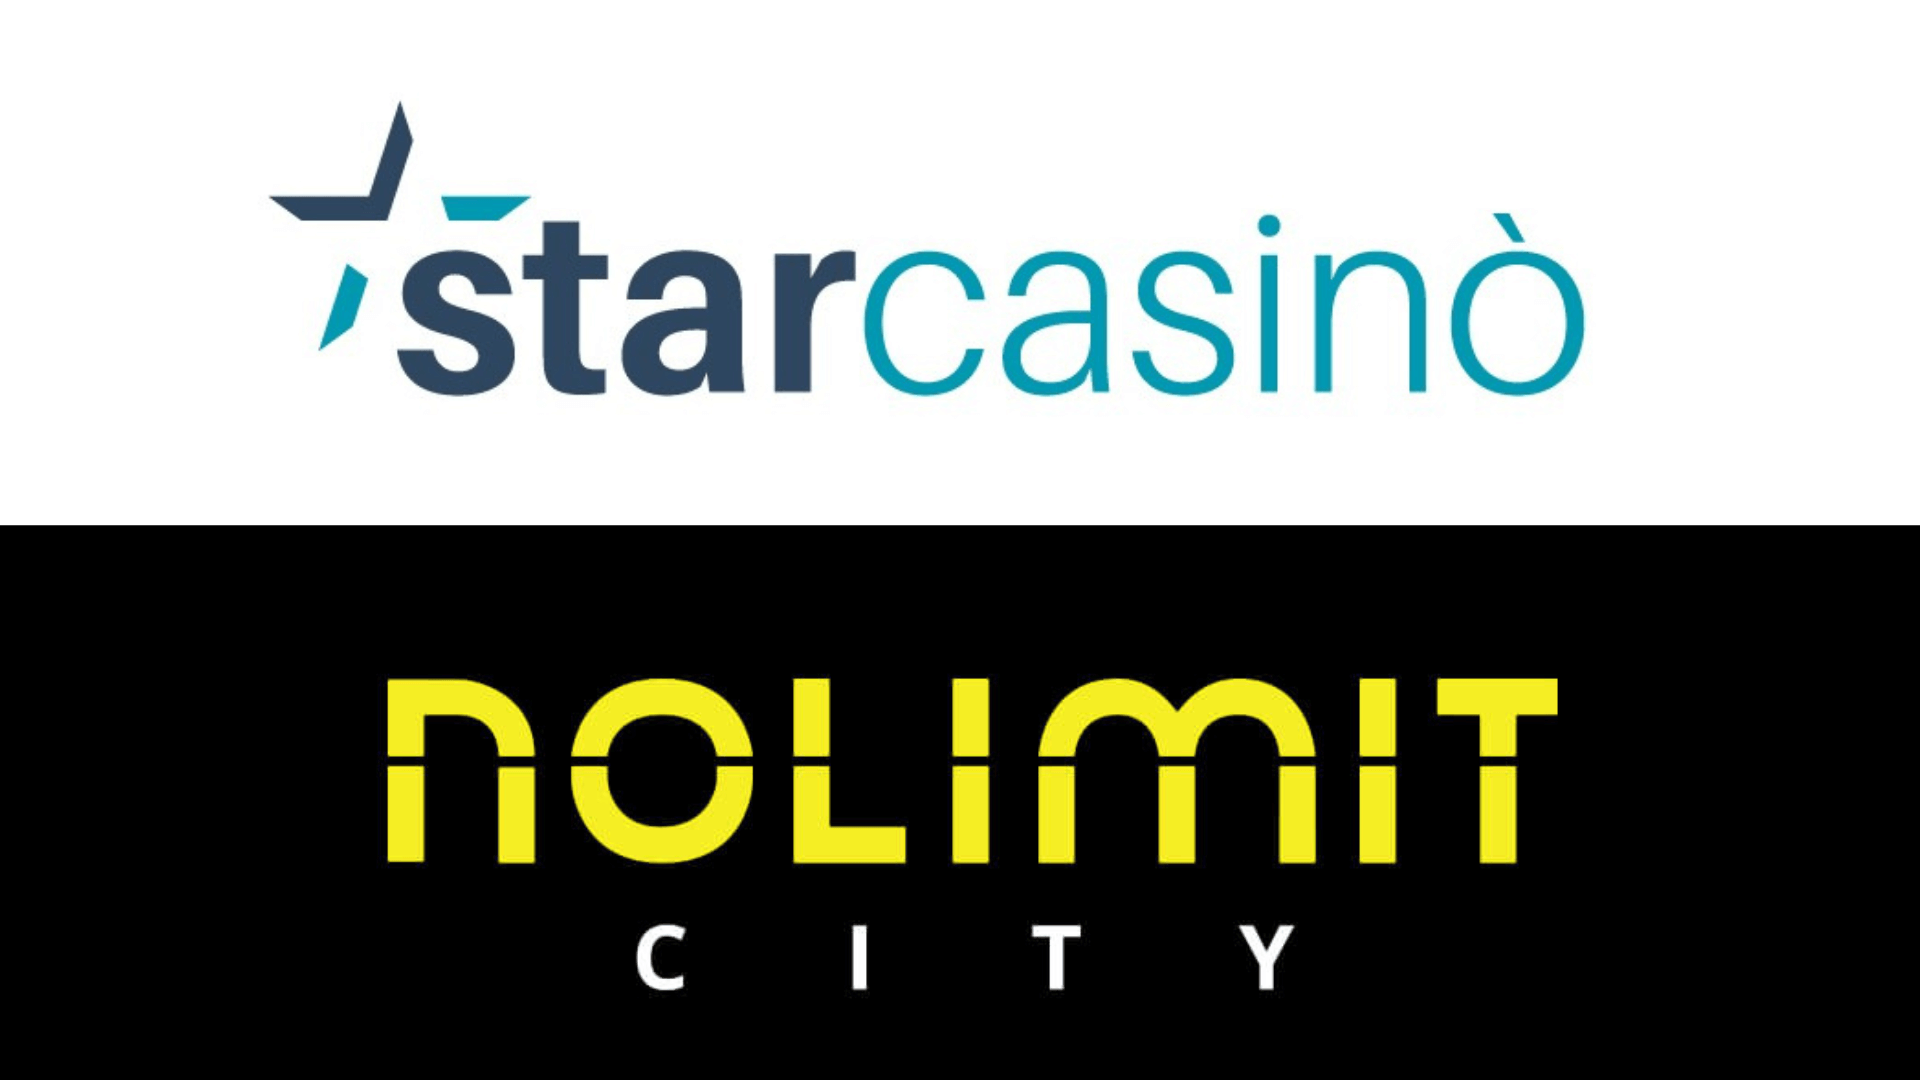 Nolimit City irrompe su StarCasinò: sale a 50 il numero di slot del provider, tutte all’insegna delle sue elettrizzanti funzioni